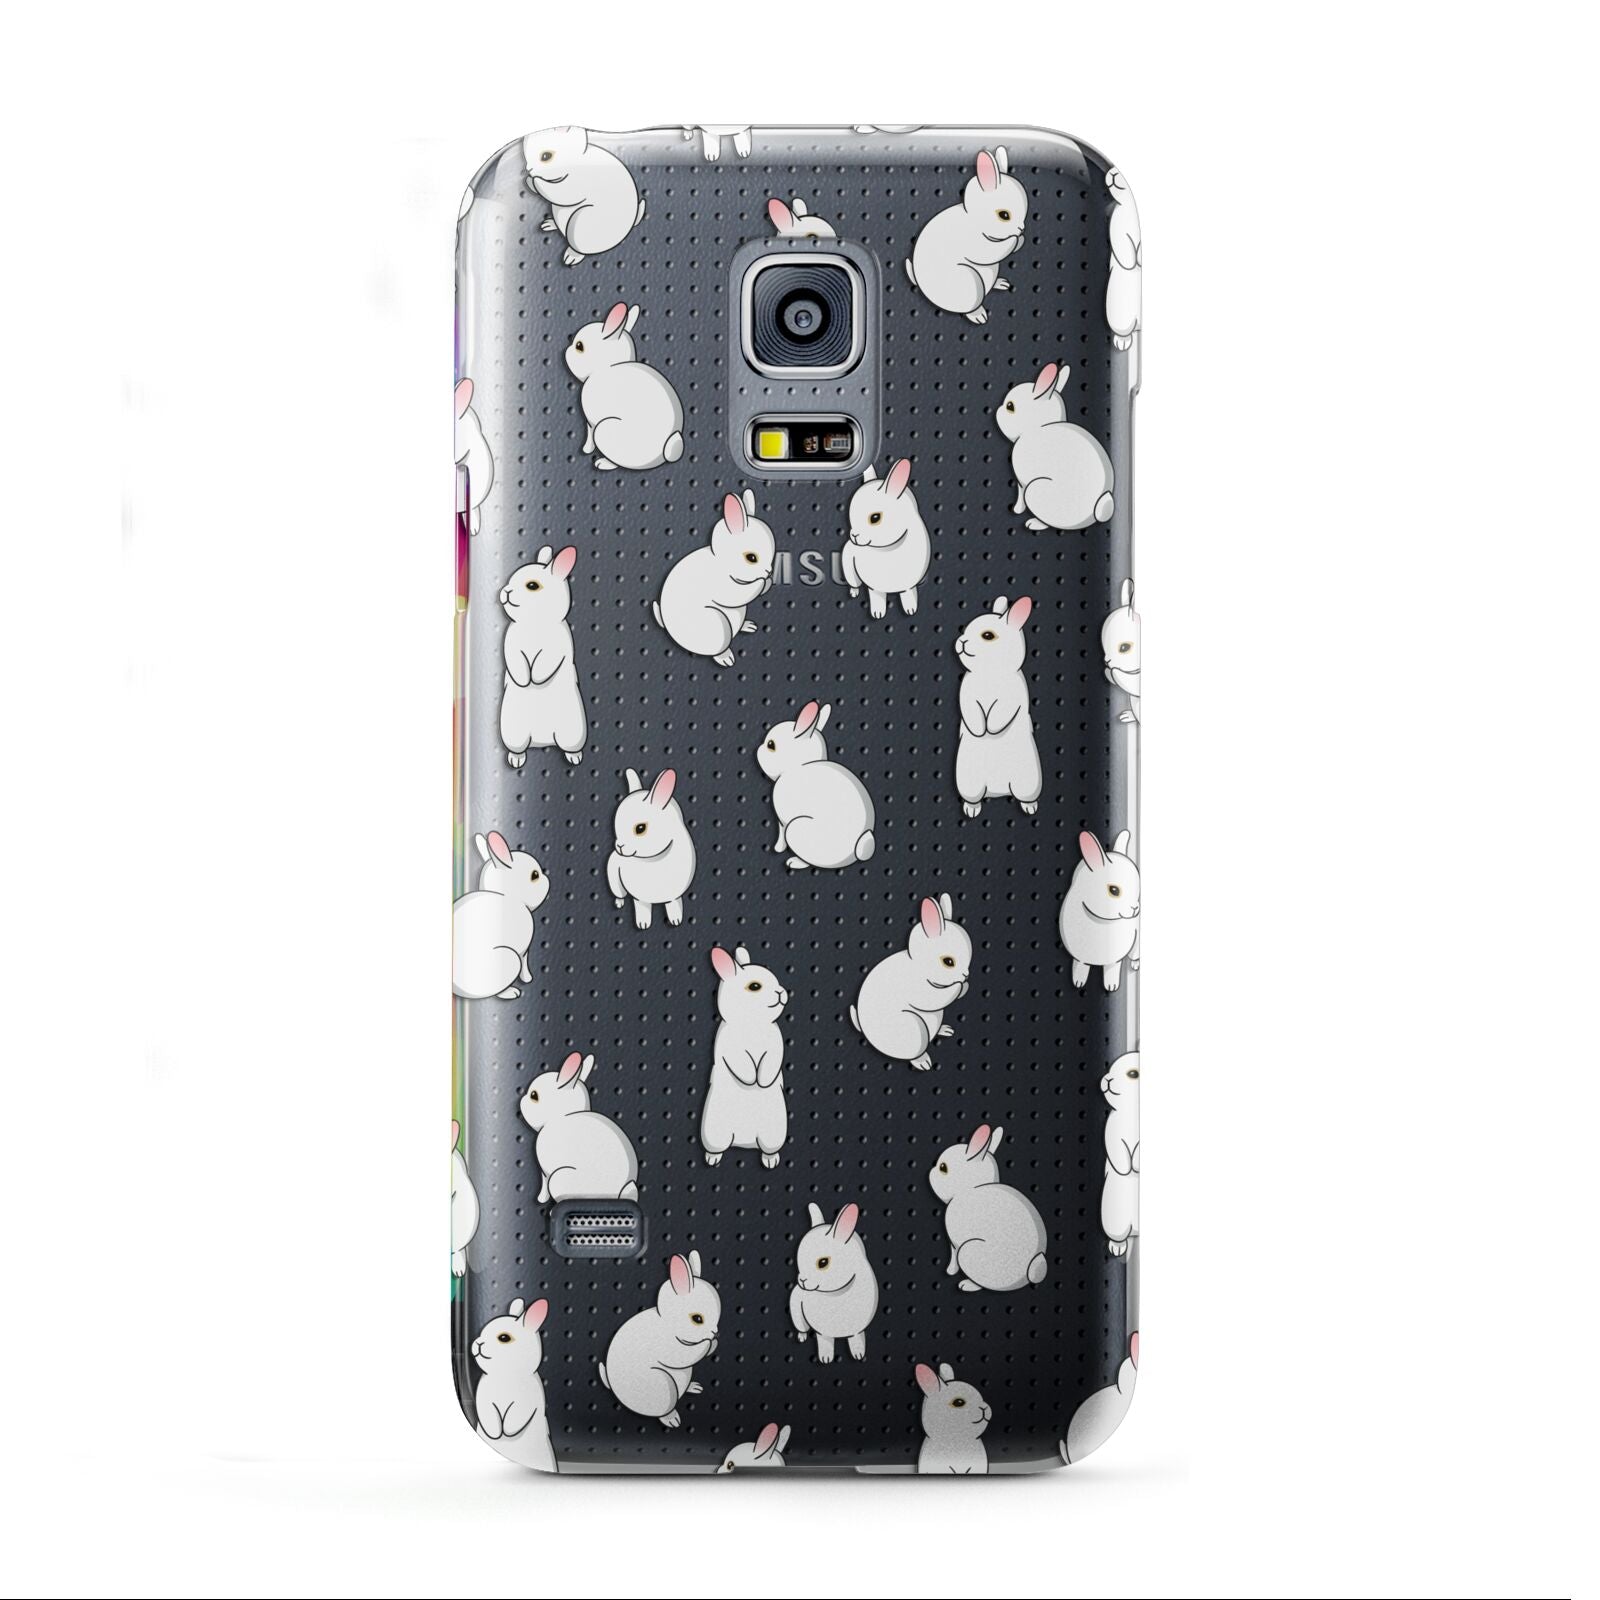 Bunny Rabbit Samsung Galaxy S5 Mini Case